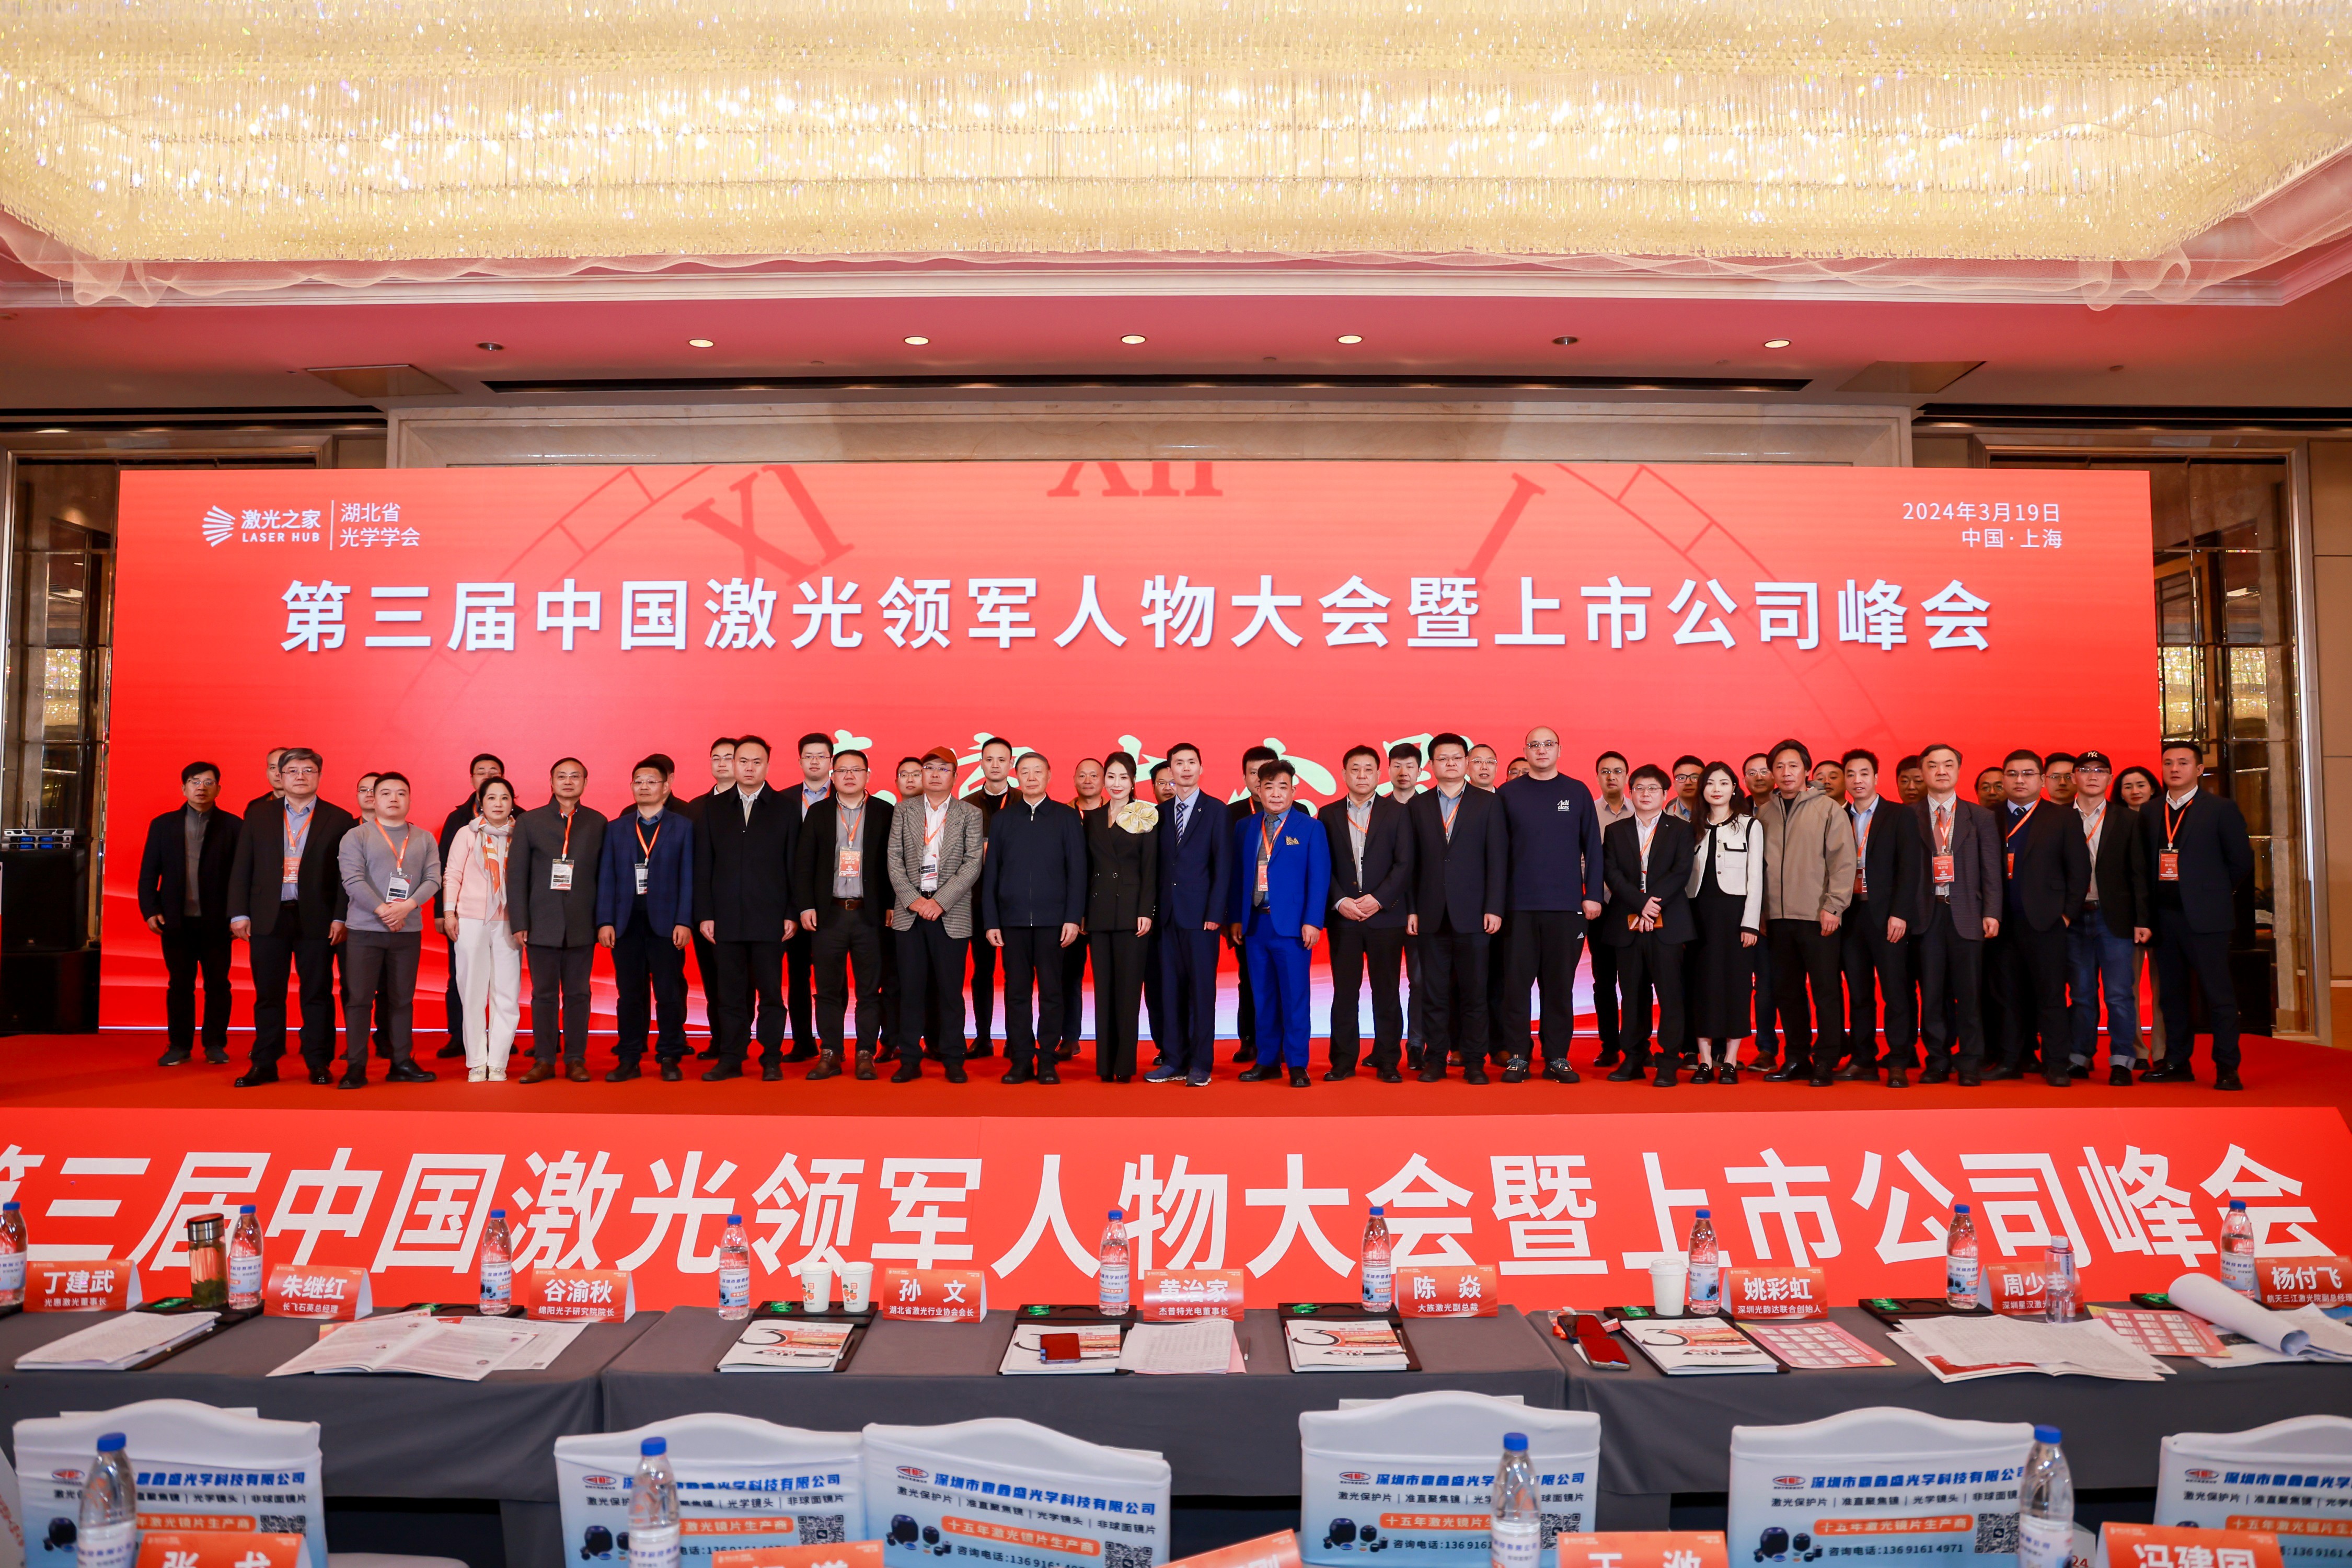 bet356体育在线亚洲版下载公司受邀在第三届中国激光领军人物大会暨上市公司峰会上发表主题演讲